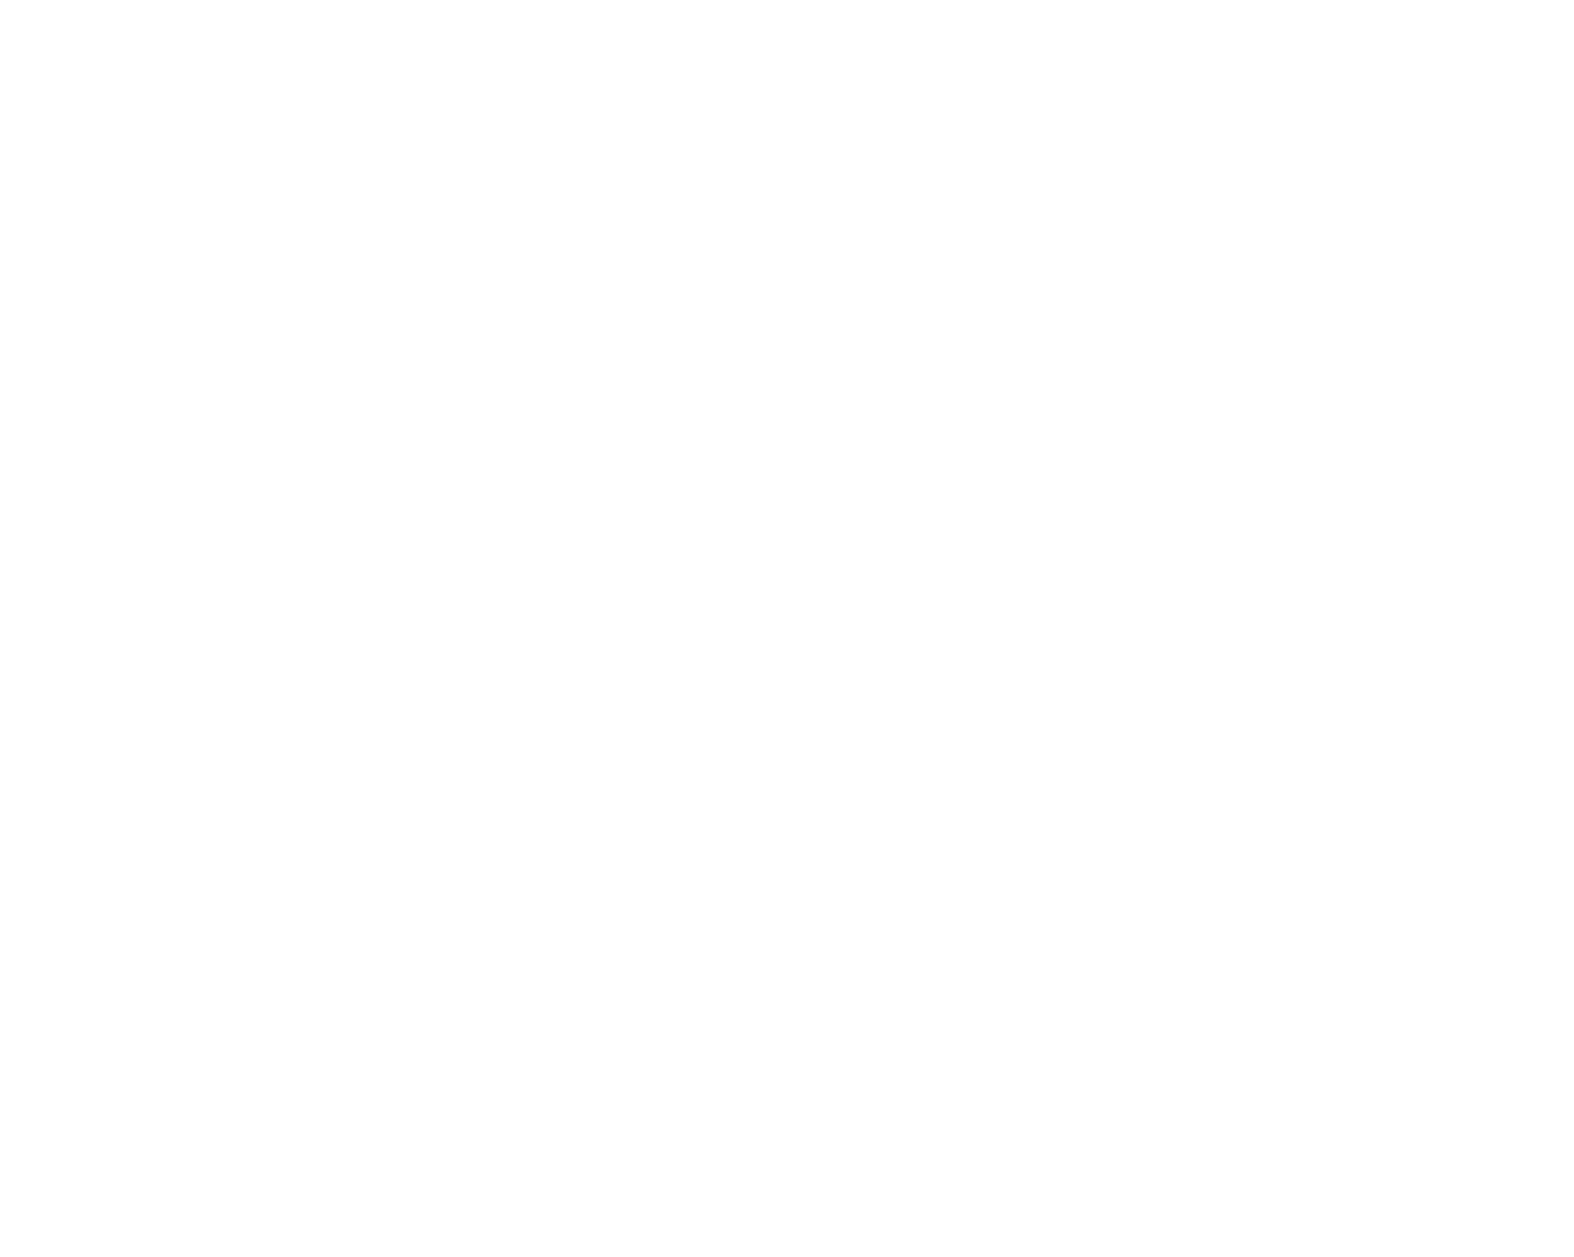 International Games System logo large for dark backgrounds (transparent PNG)